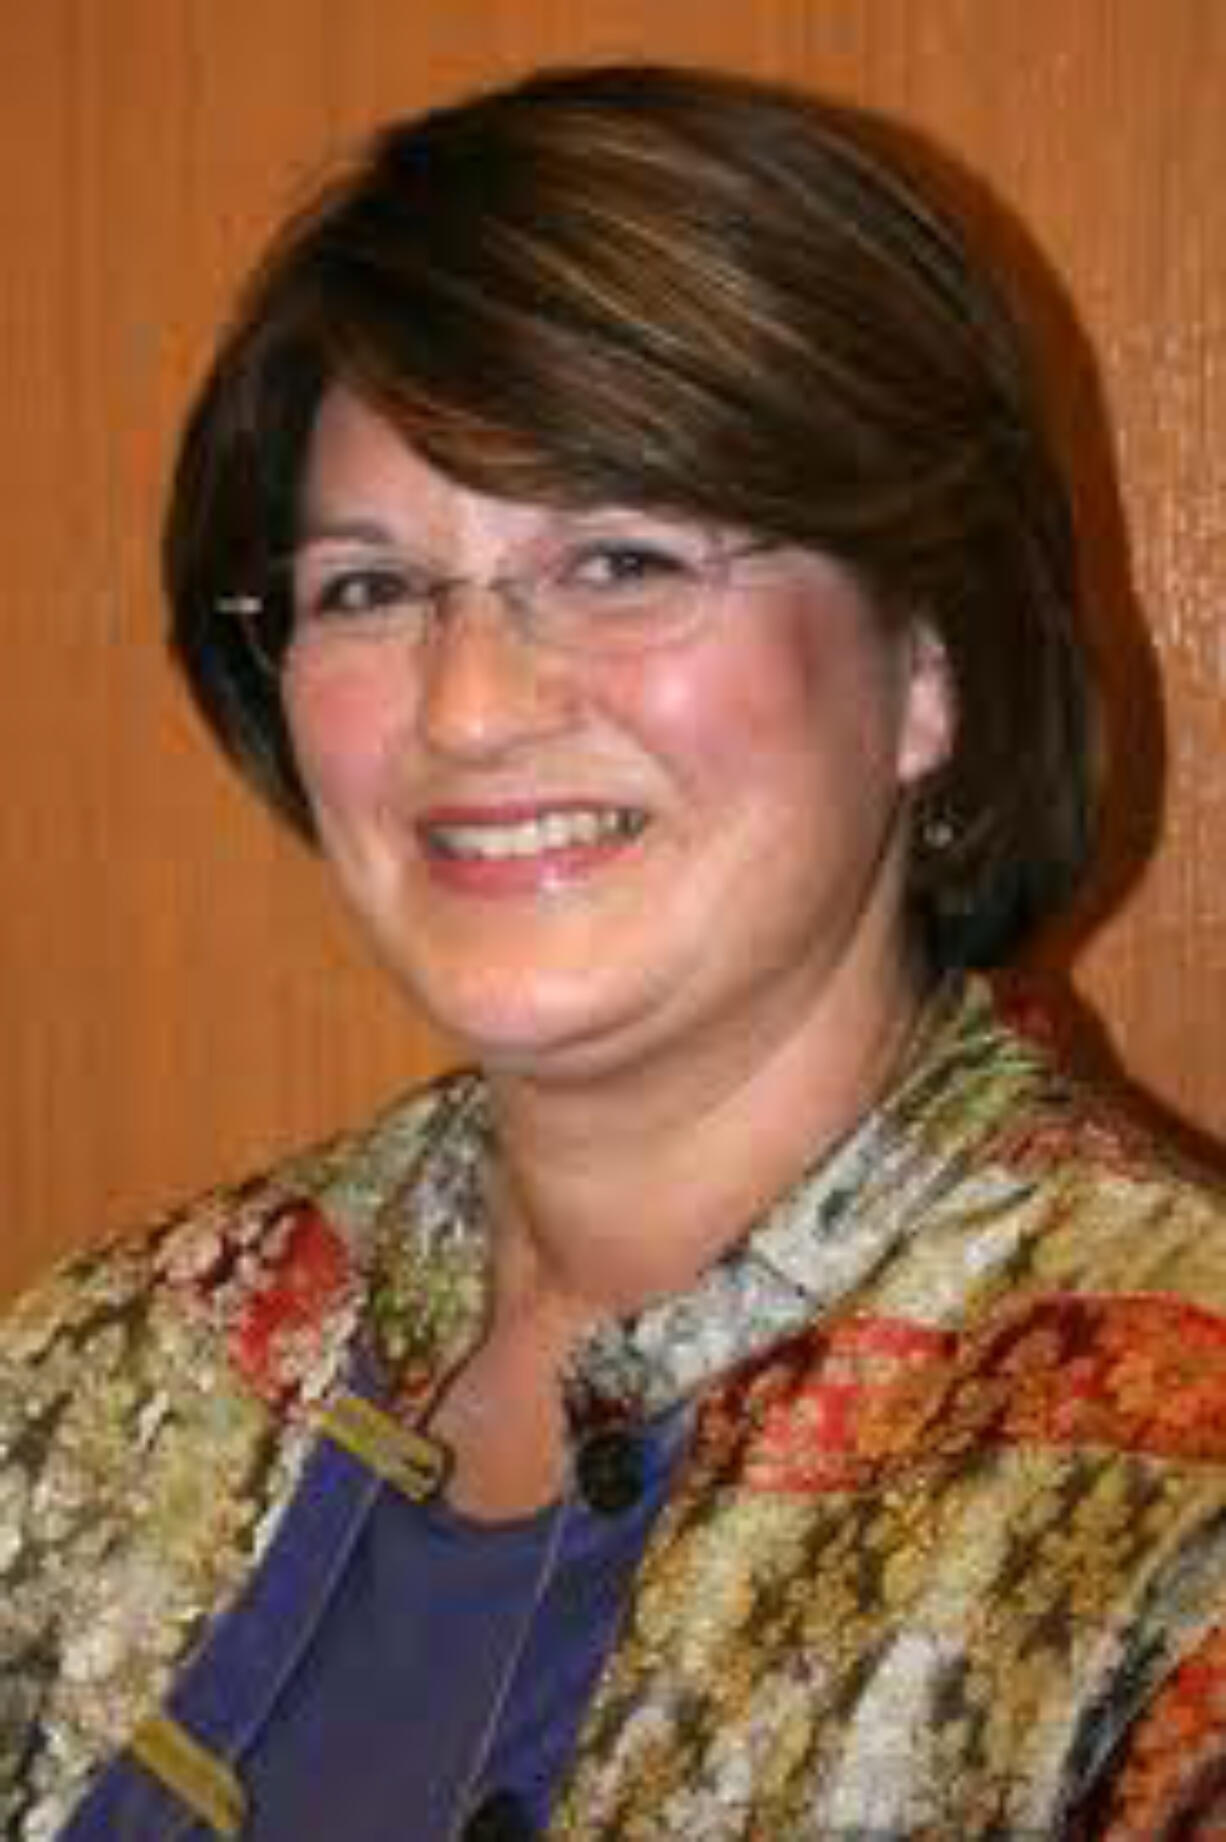 Nina Regor
Camas city administrator